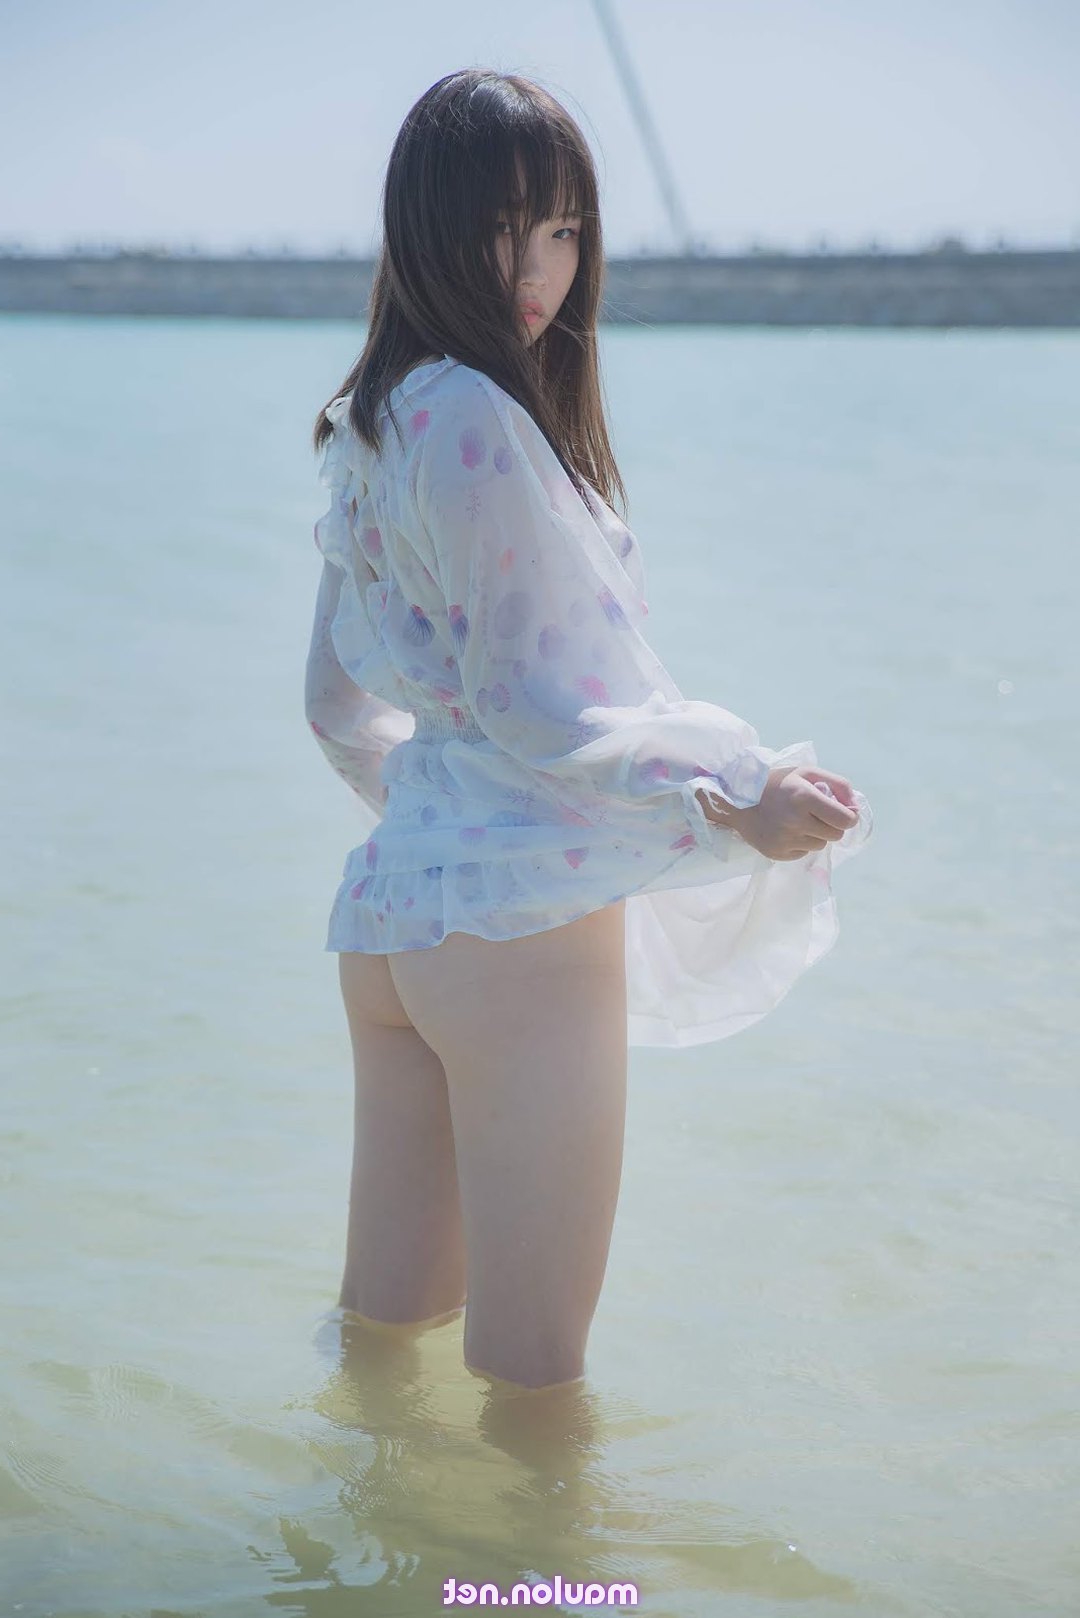 Em gái thả rông trên biển mênh mông (22 Pic) | MauLon.Xyz